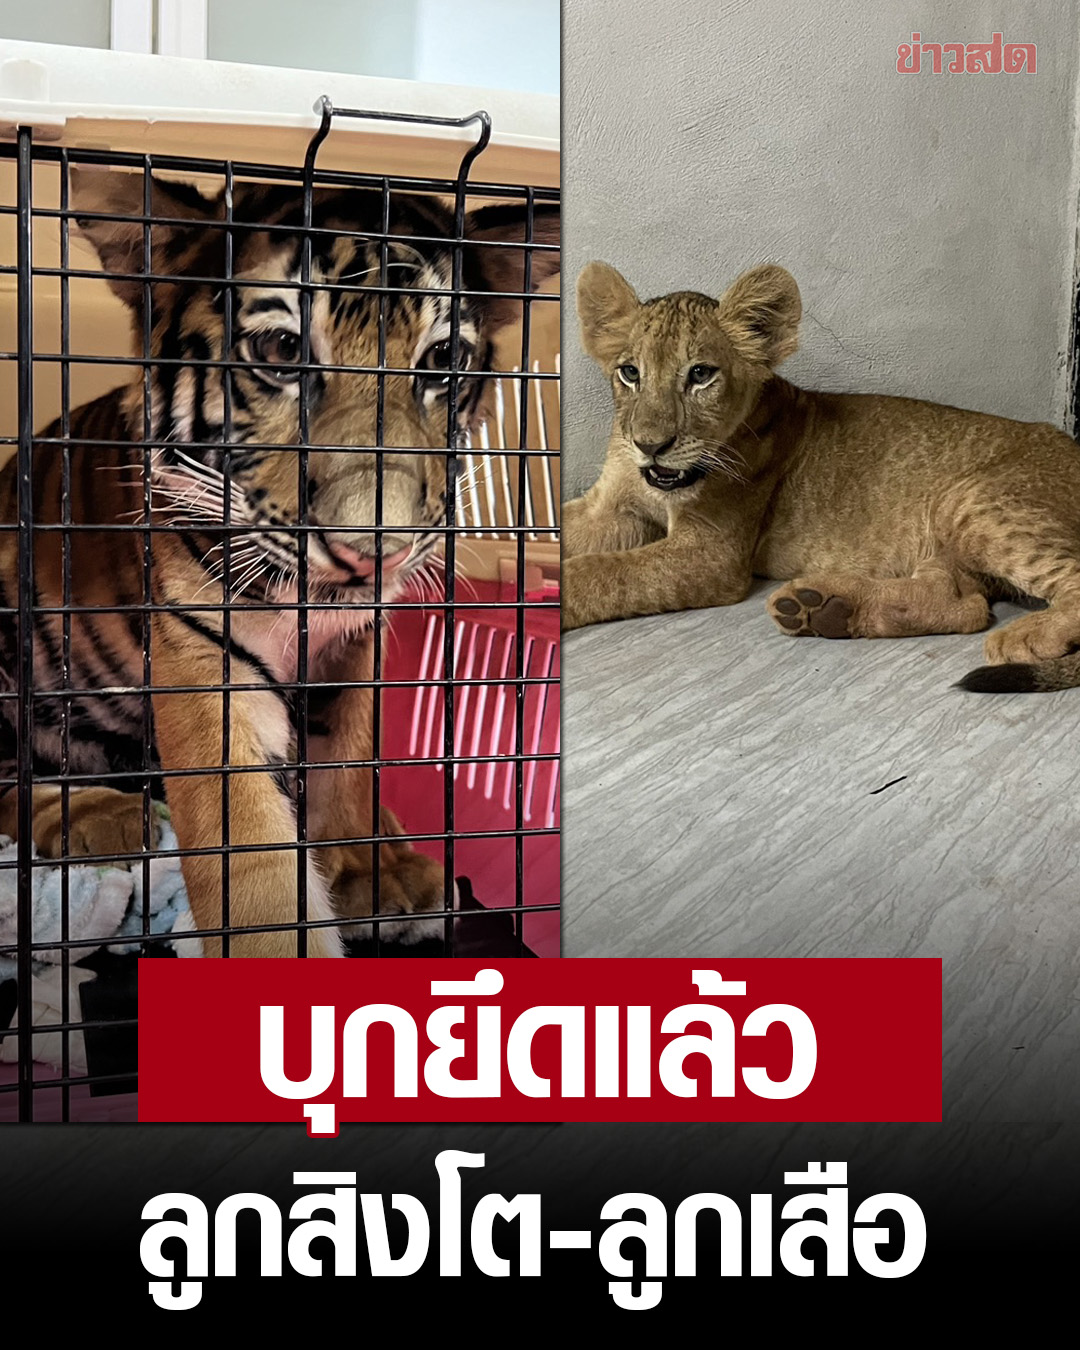 农场主未经许可非法饲养狮子老虎！目前已被捕！